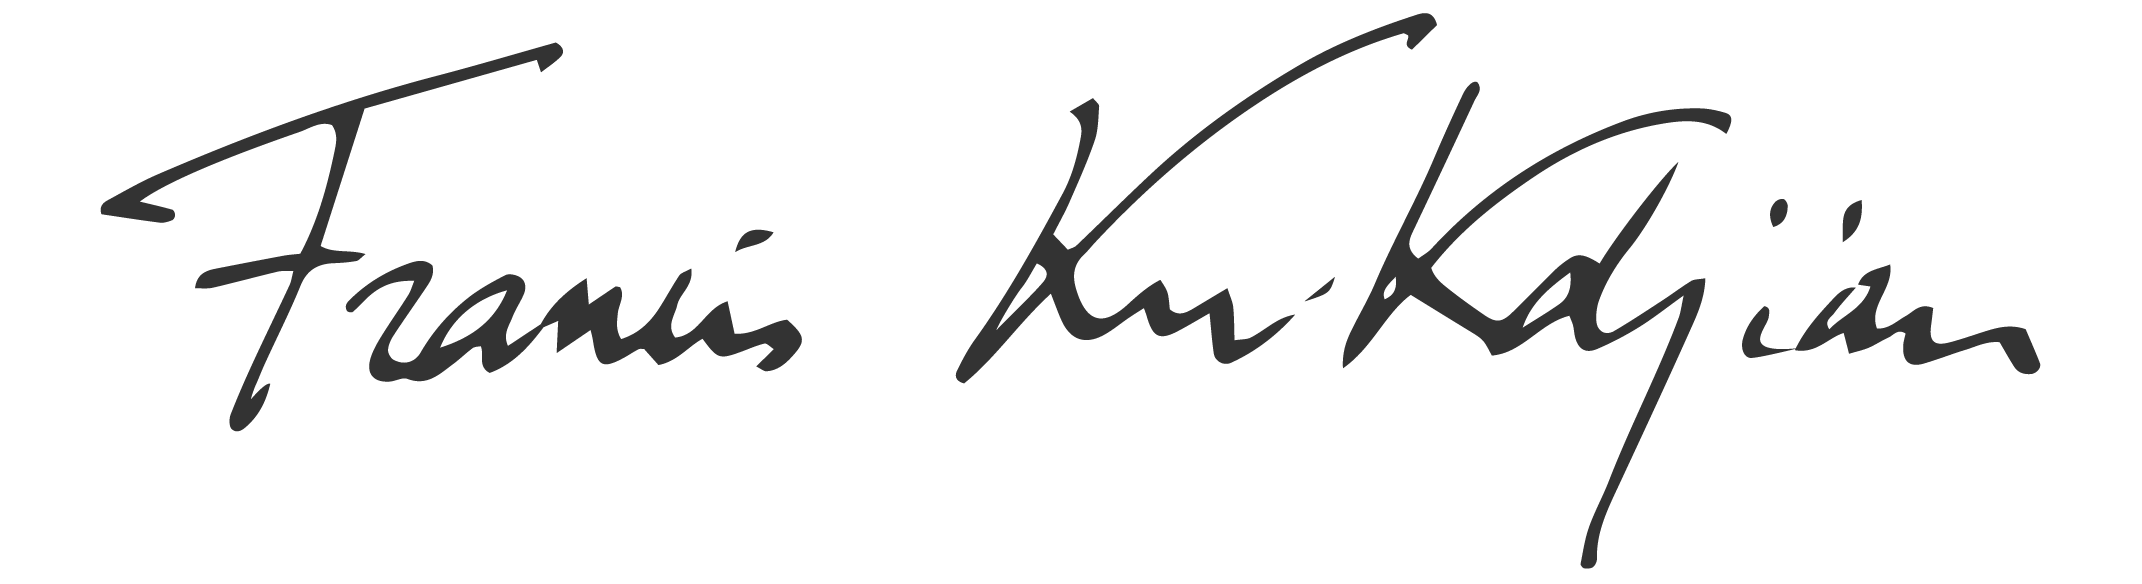 Maison Francis Kurkdjian - Official online store